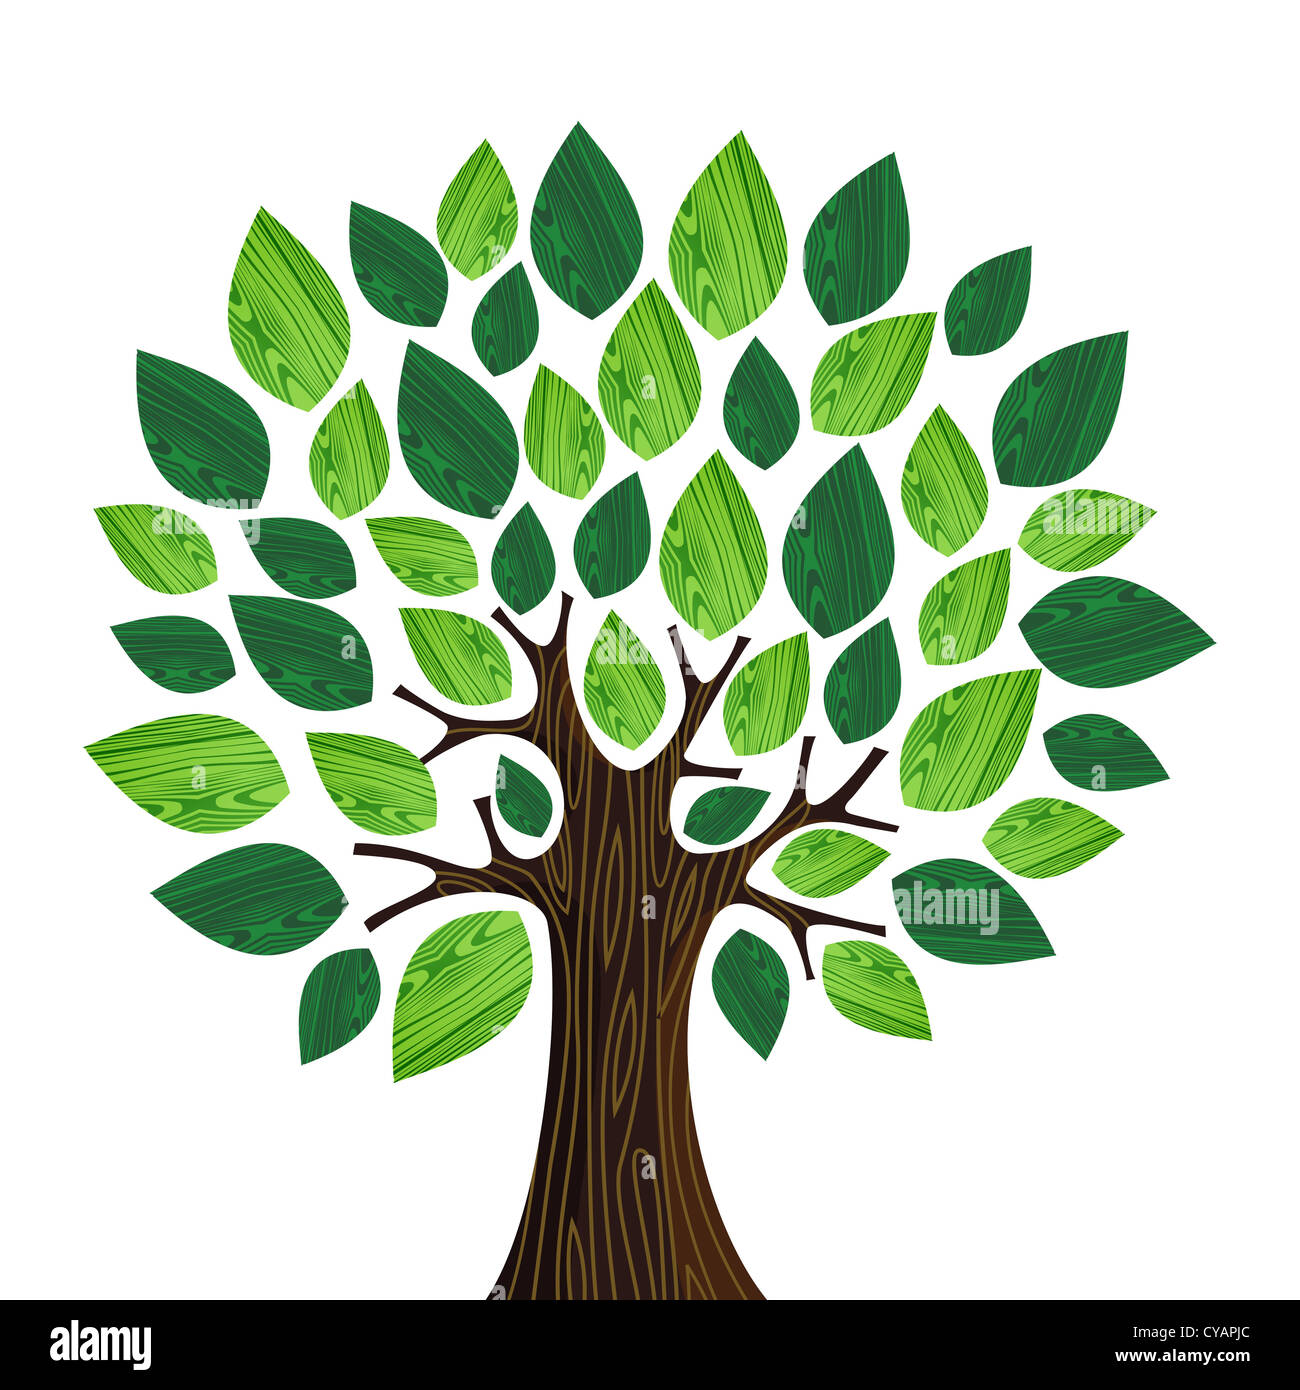 Isolierten Eco freundliche Baum mit Grün Holz Blättern Abbildung. Vektor-Datei geschichtet für einfache Handhabung und individuelle Farbgebung. Stockfoto